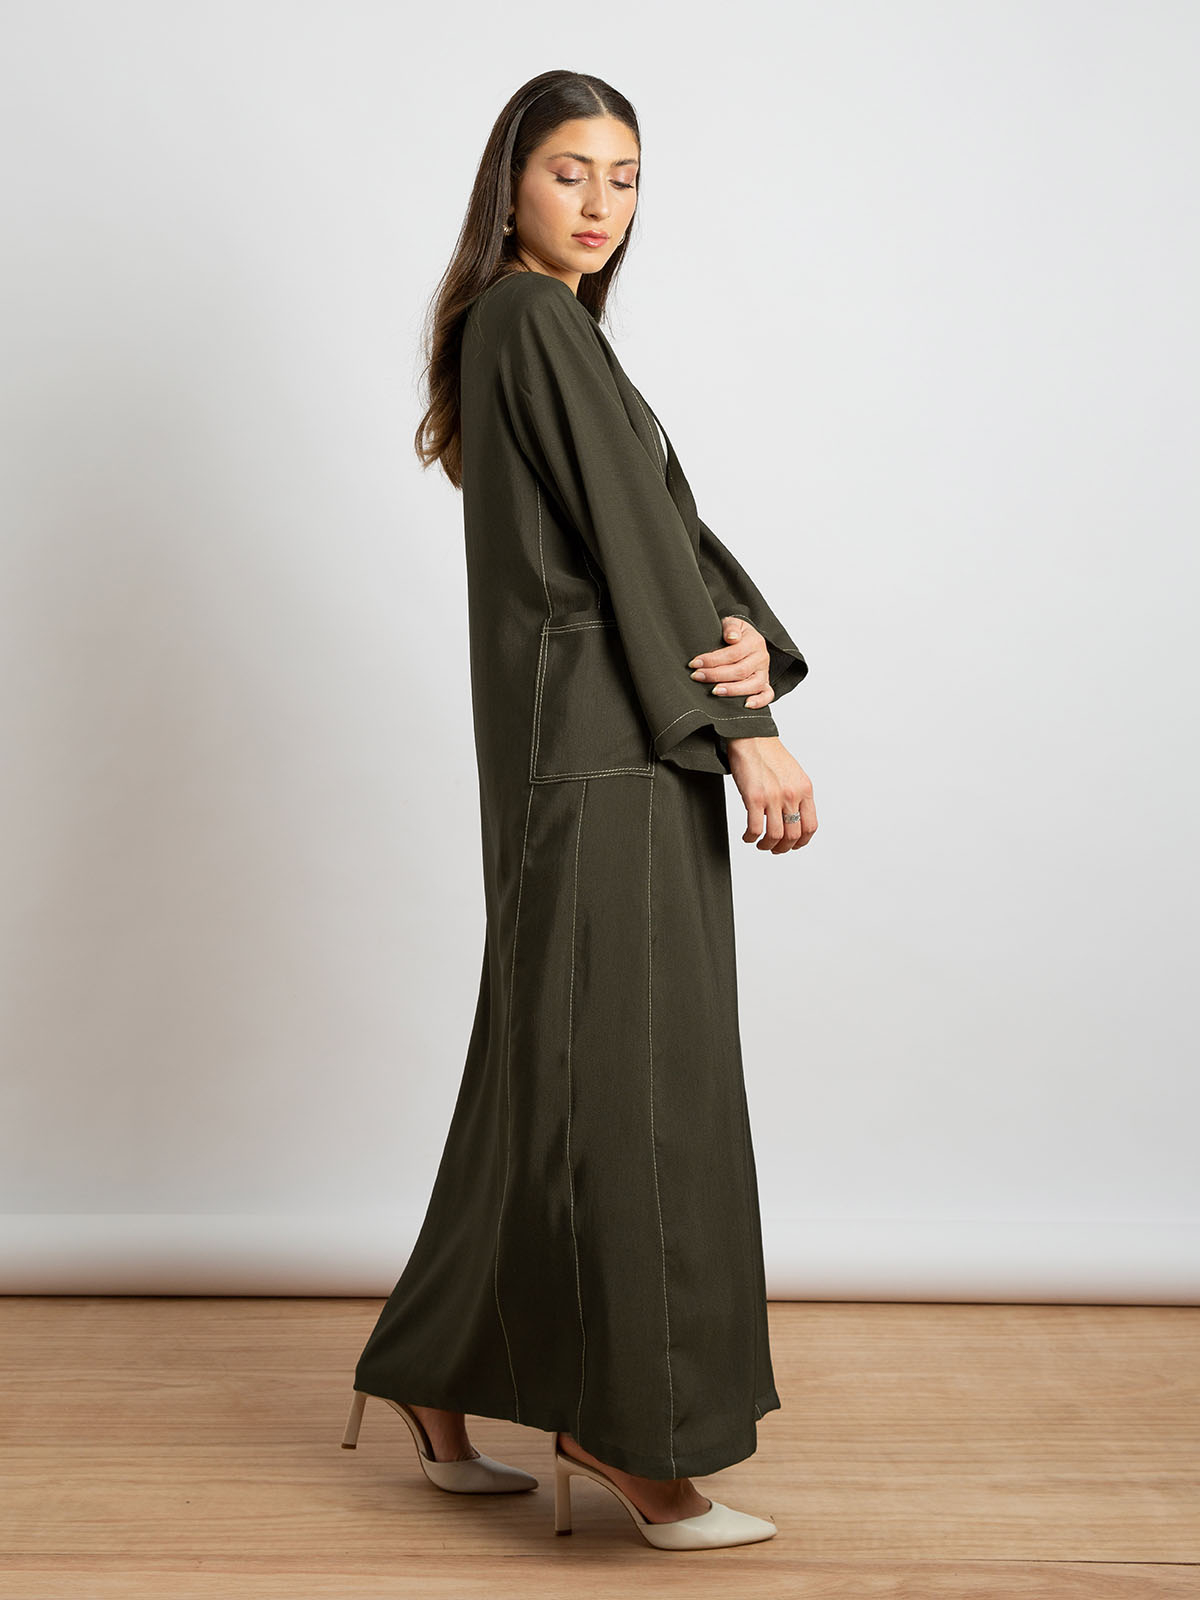 Olive - Salona Abstract Abaya with Pockets